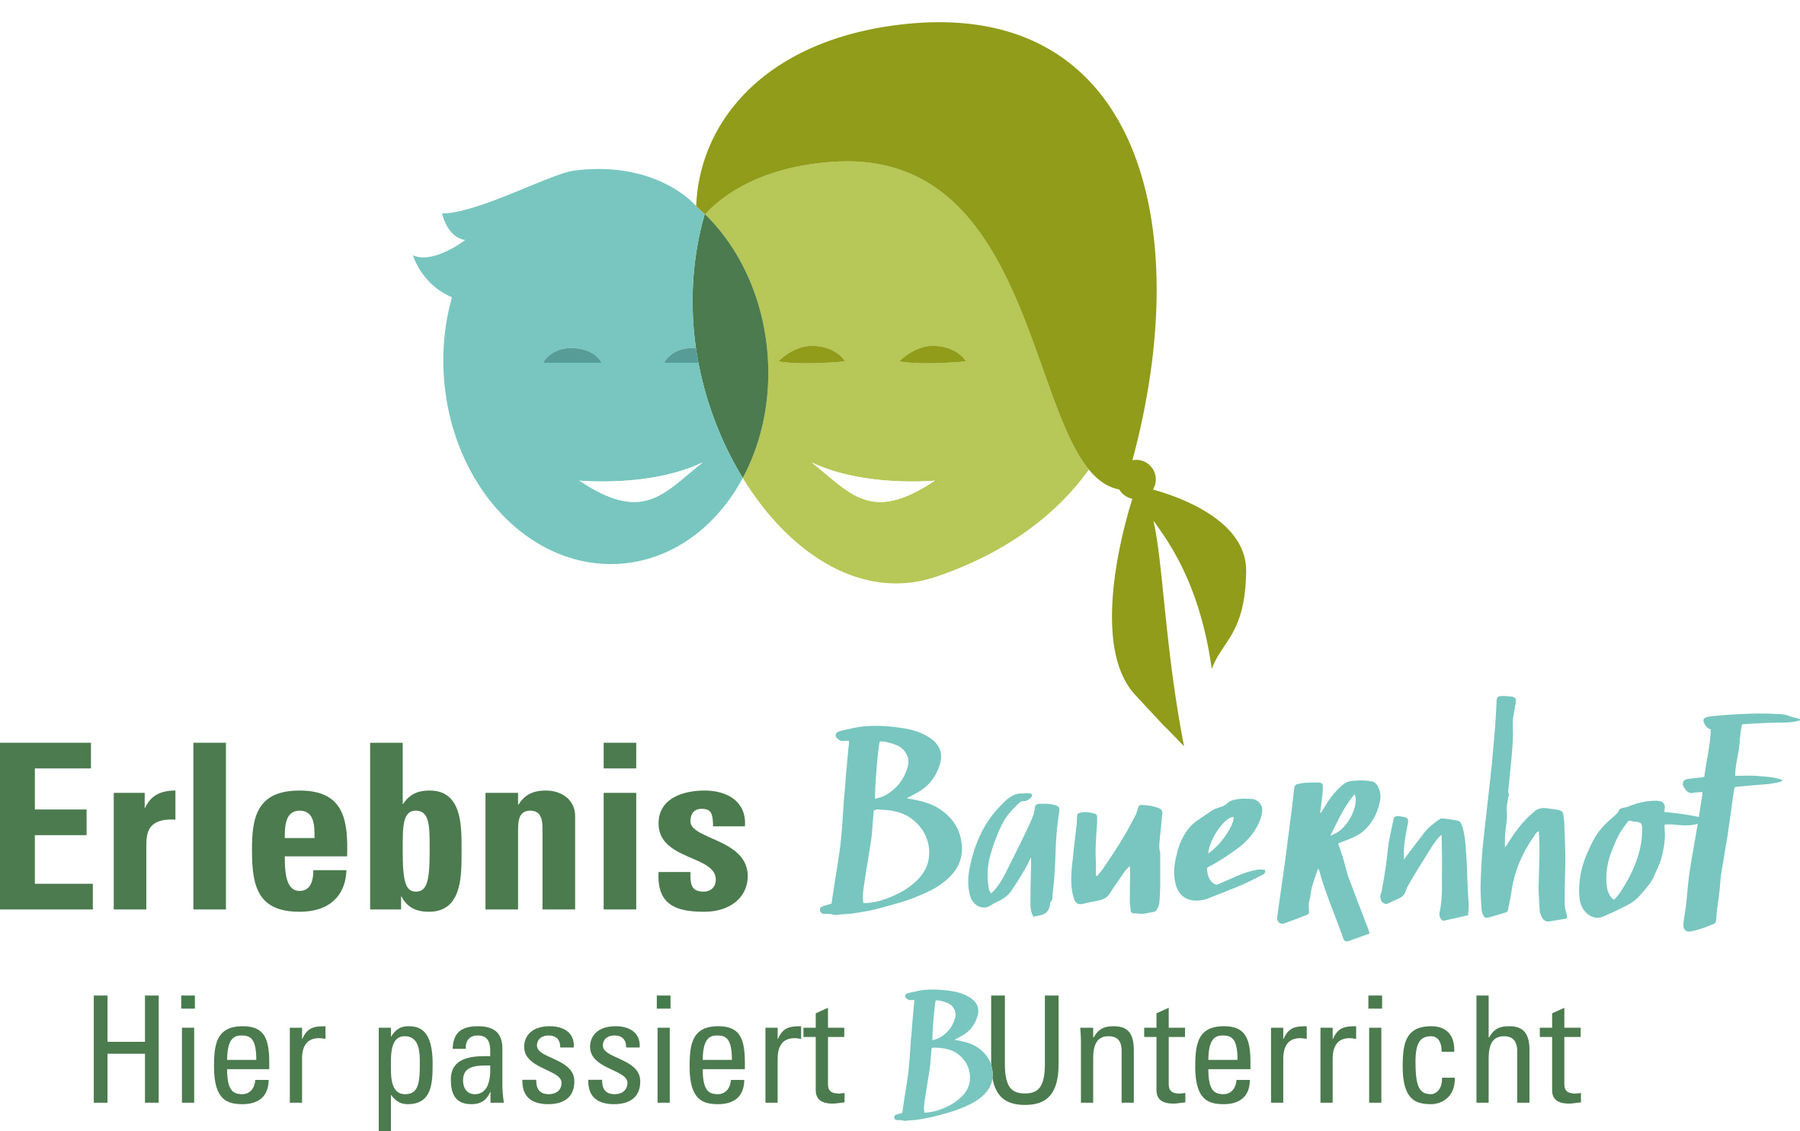 logo erlebnisBauernhof 4c.jpg